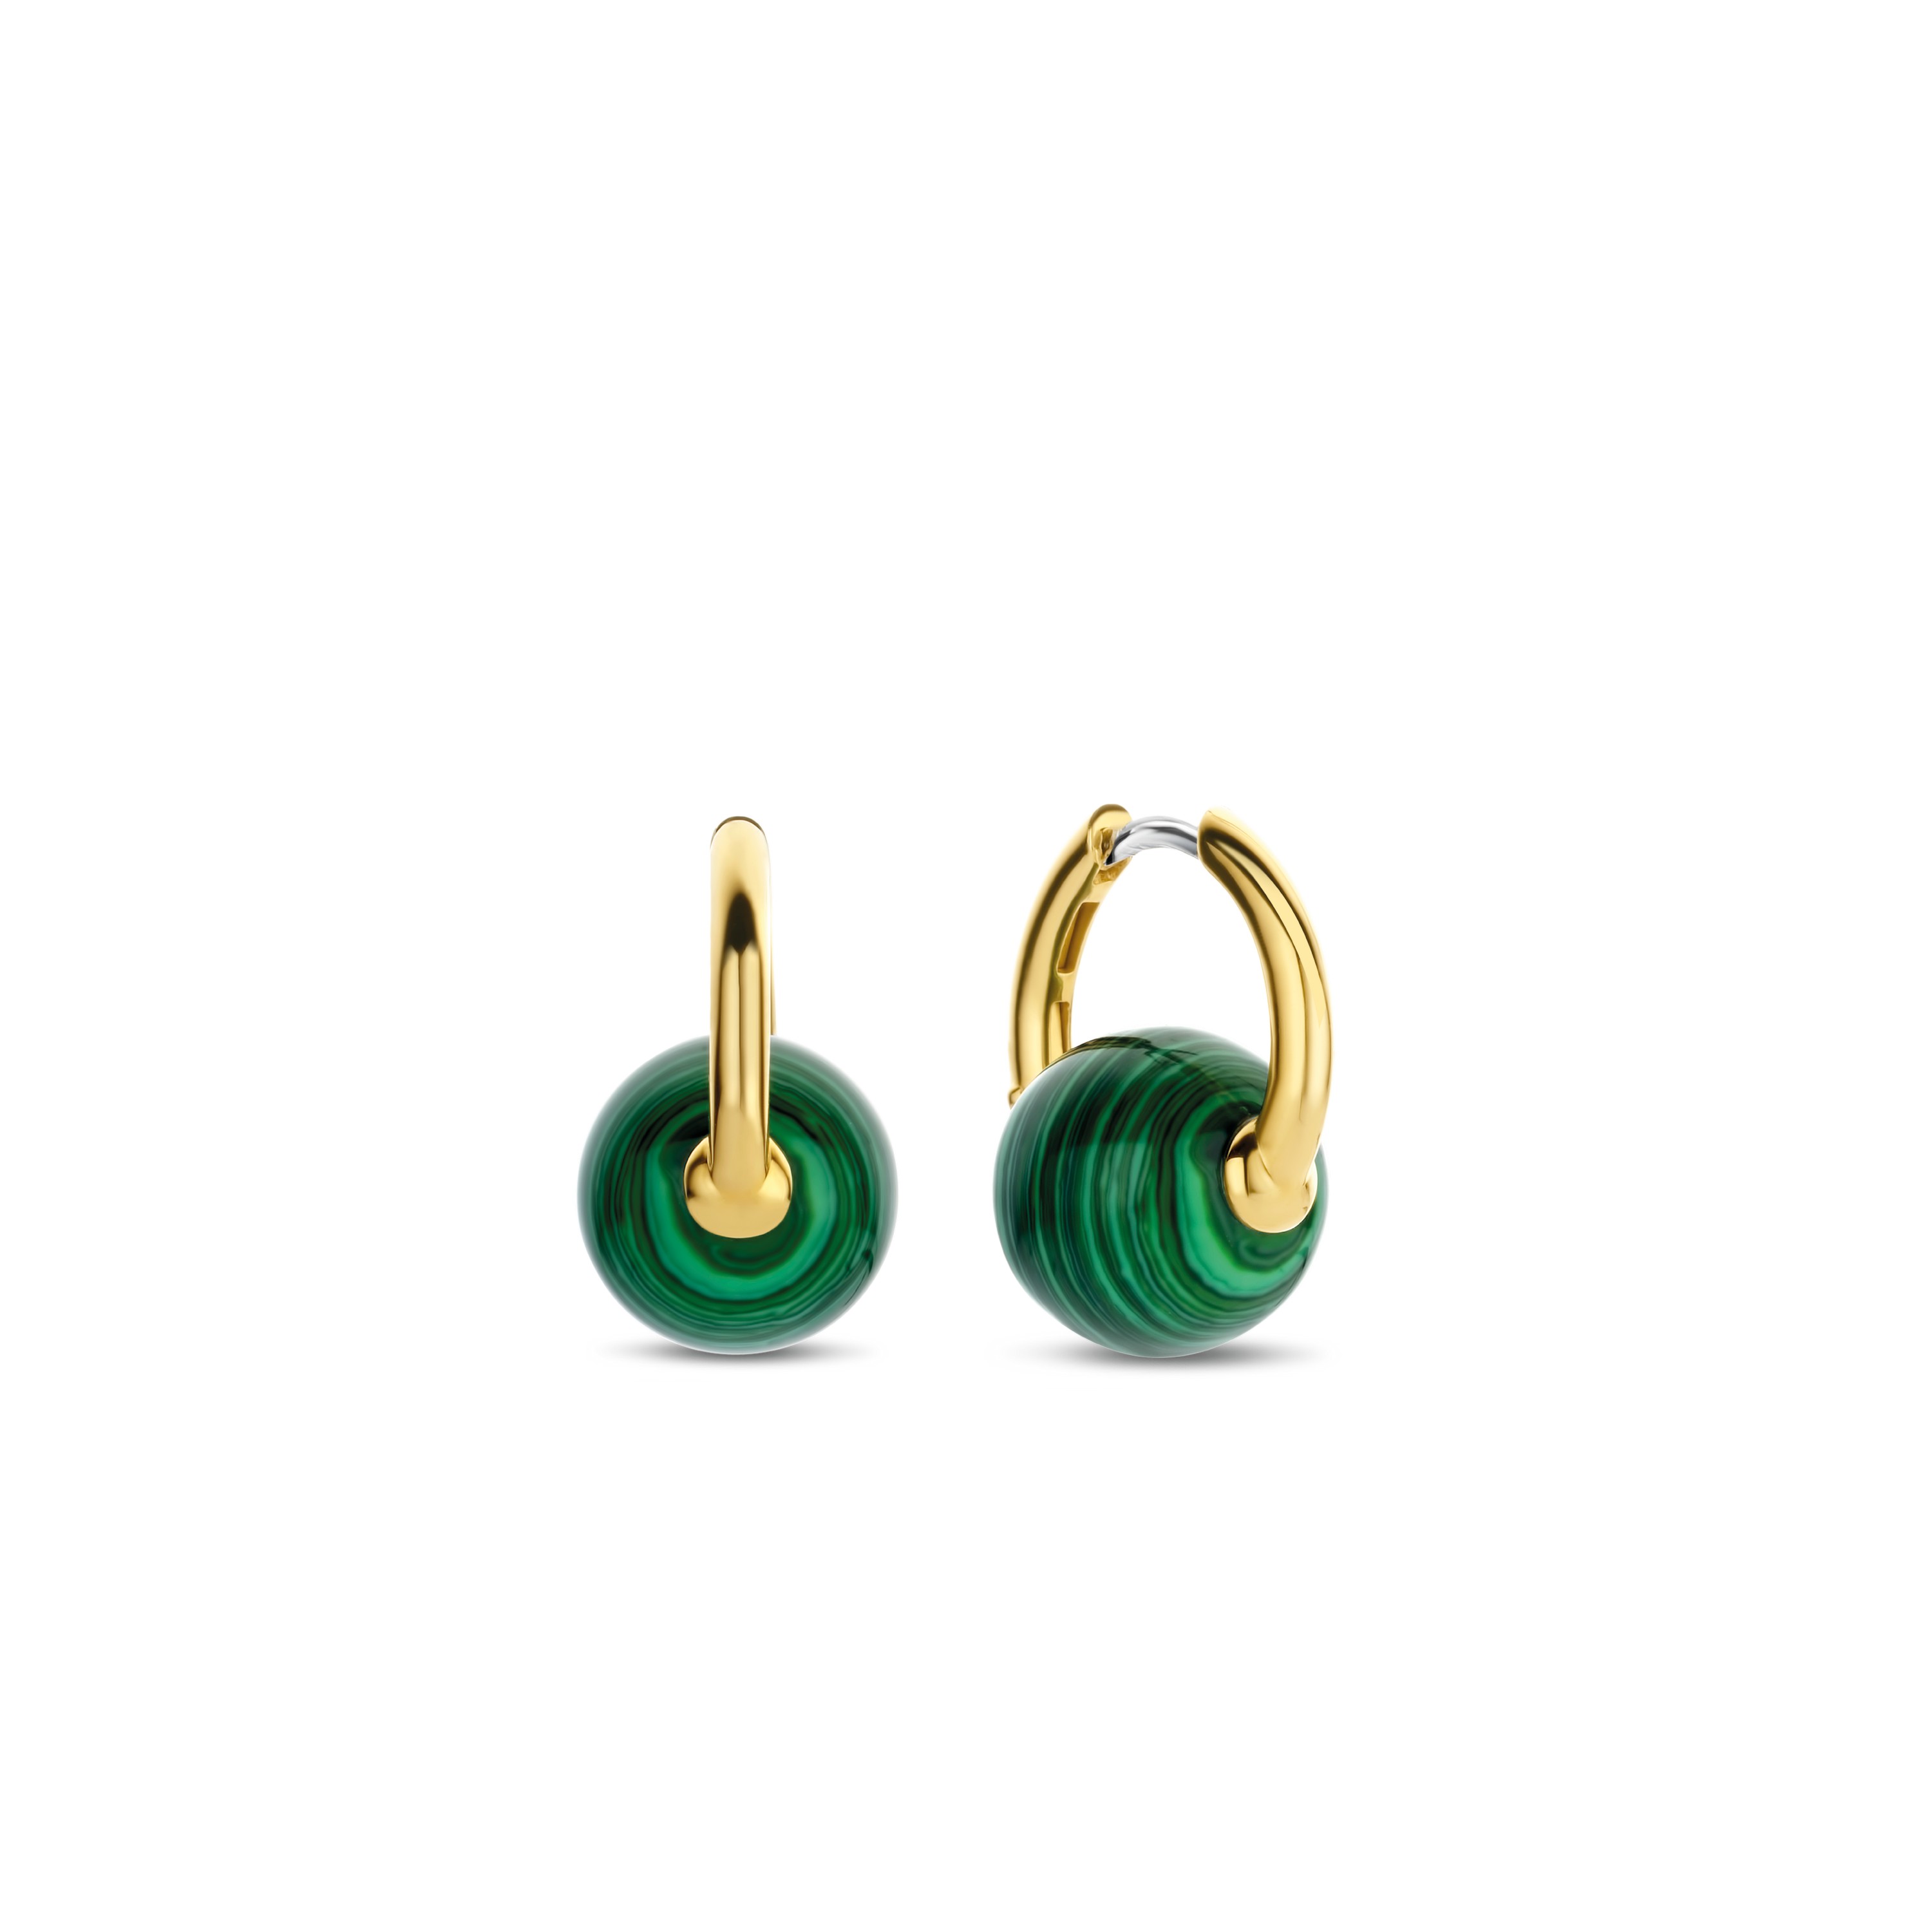 TI SENTO - Milano Earrings 7850MA Gala Jewelers Inc. White Oak, PA